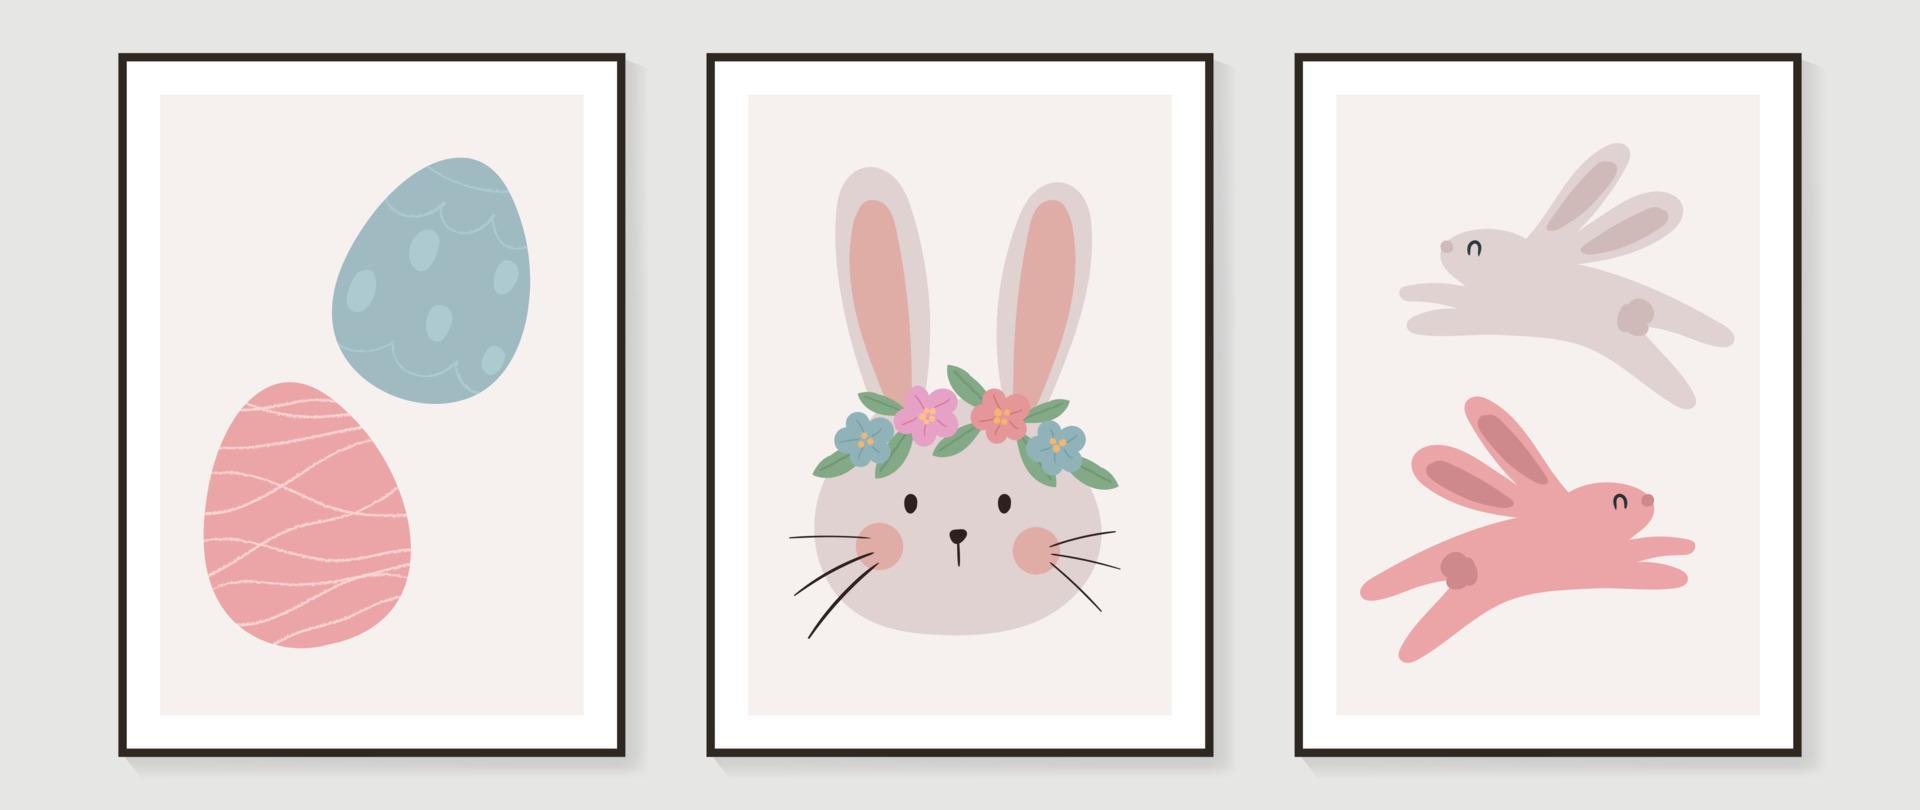 söt komisk påsk vägg konst vektor uppsättning. samling av förtjusande hand dragen kanin, påsk ägg, blommor. design illustration för barnkammare vägg konst i klotter stil, bebis, barn affisch, kort, inbjudan.